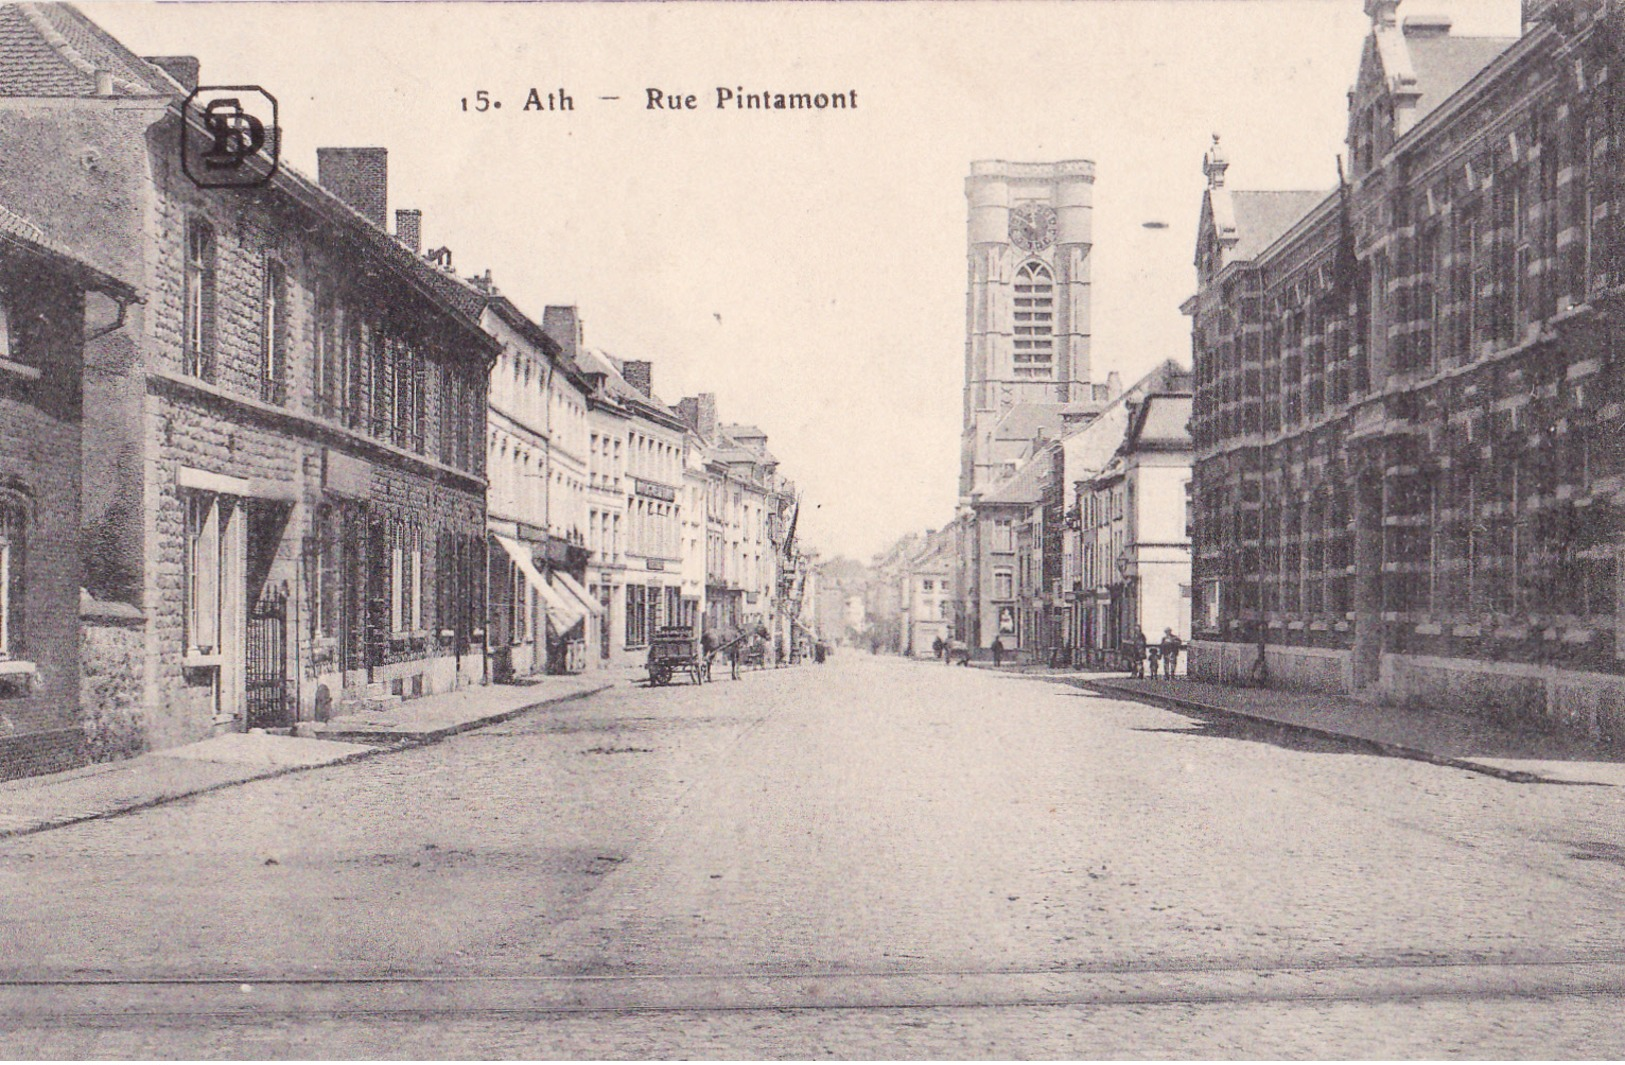 ATH: Rue Pintamont. (Erster Weltkrieg, 1917) - Ath